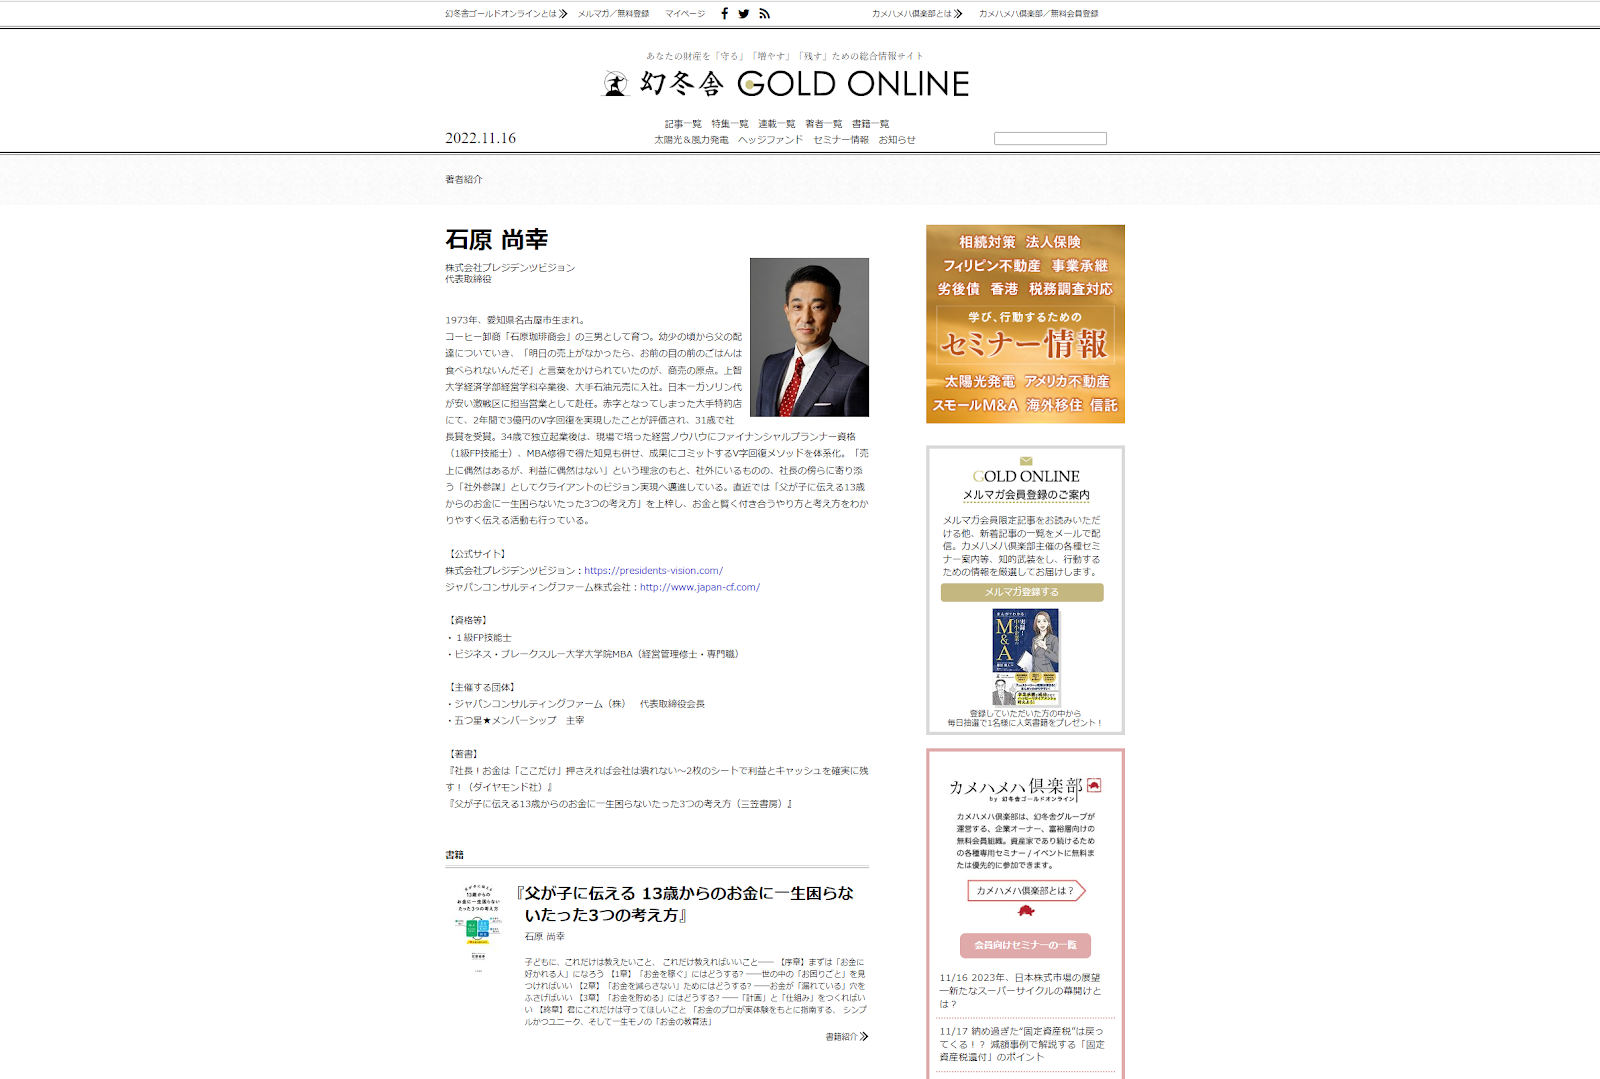 幻冬舎WEBメディア「GOLD ONLINE」書籍掲載と連載開始